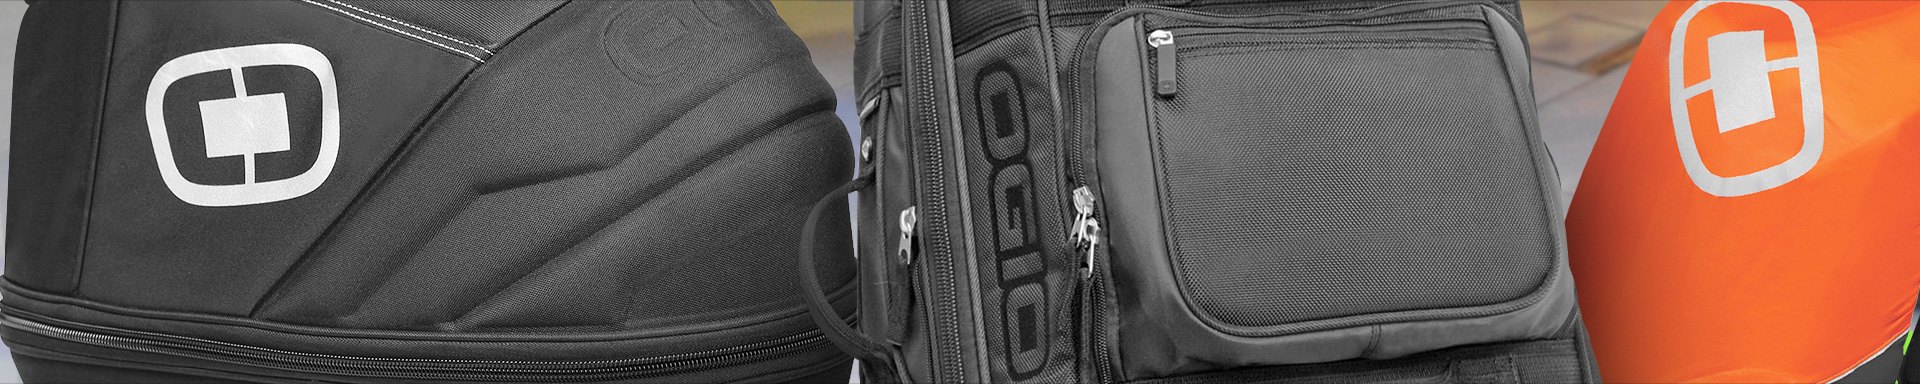 Ogio Travel Duffels & Bags